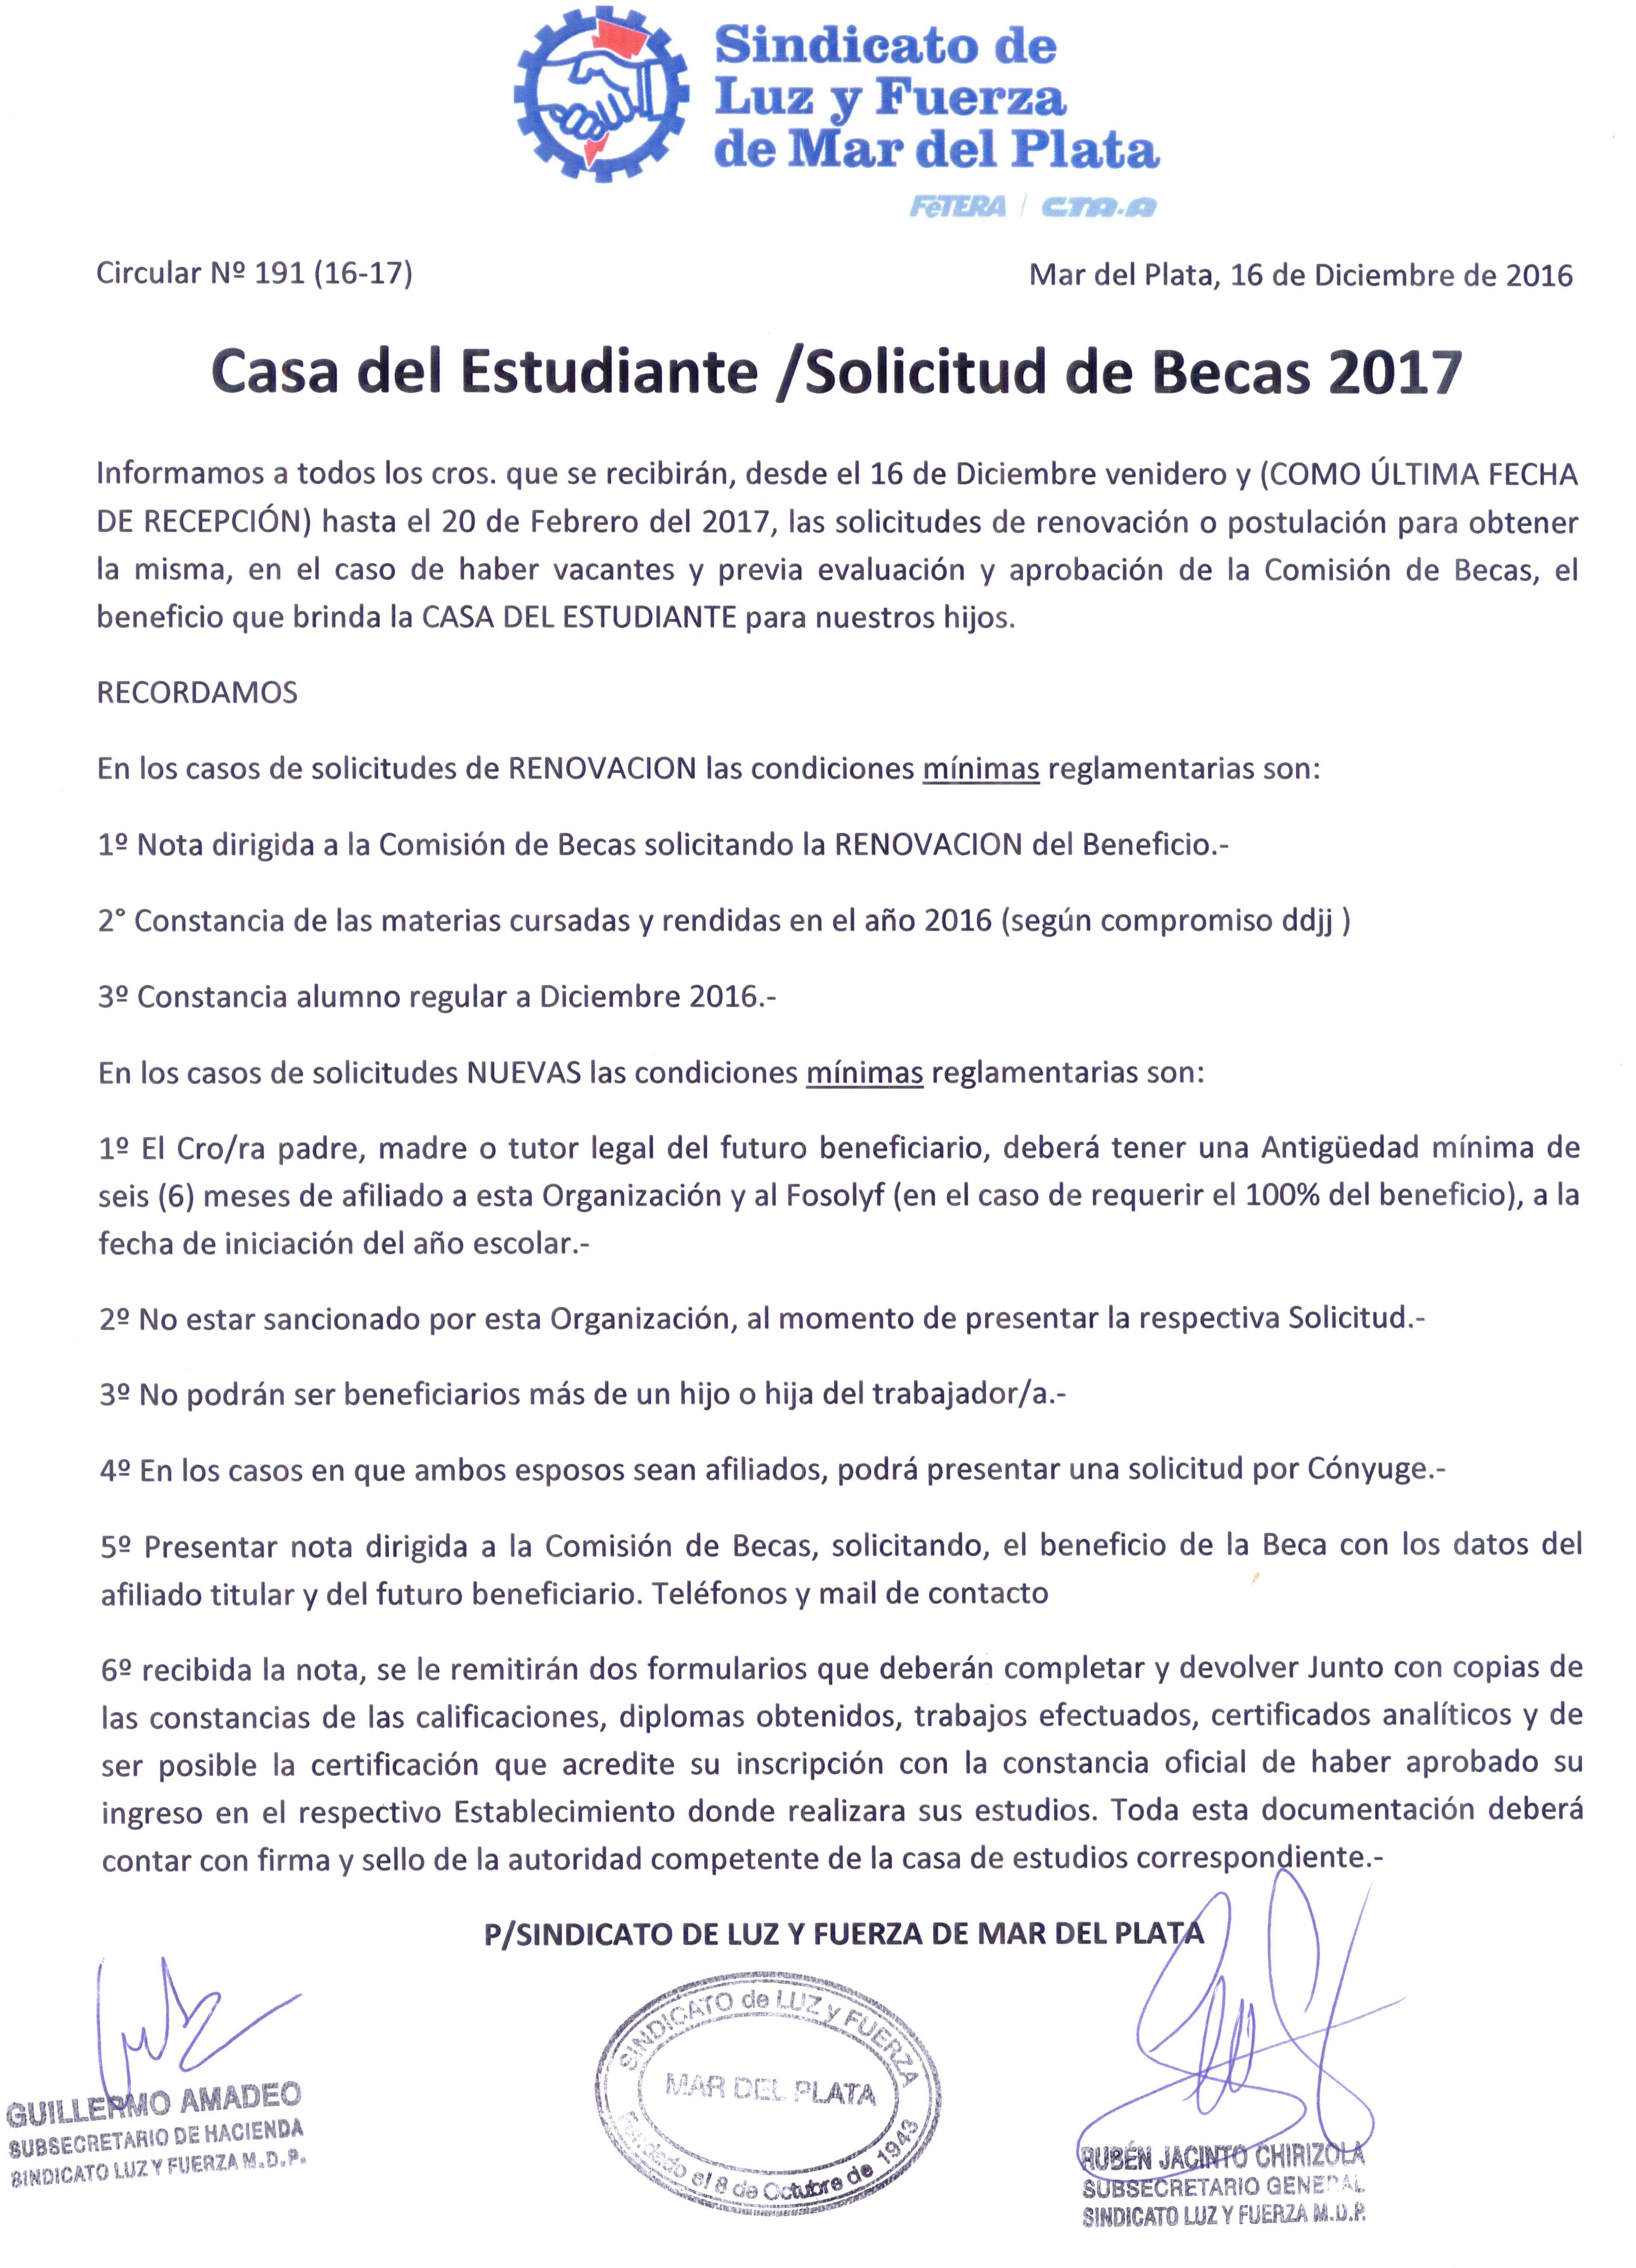 CIRCULAR N°191 (16-17): CASA DEL ESTUDIANTE: SOLICITUD DE BECAS 2017